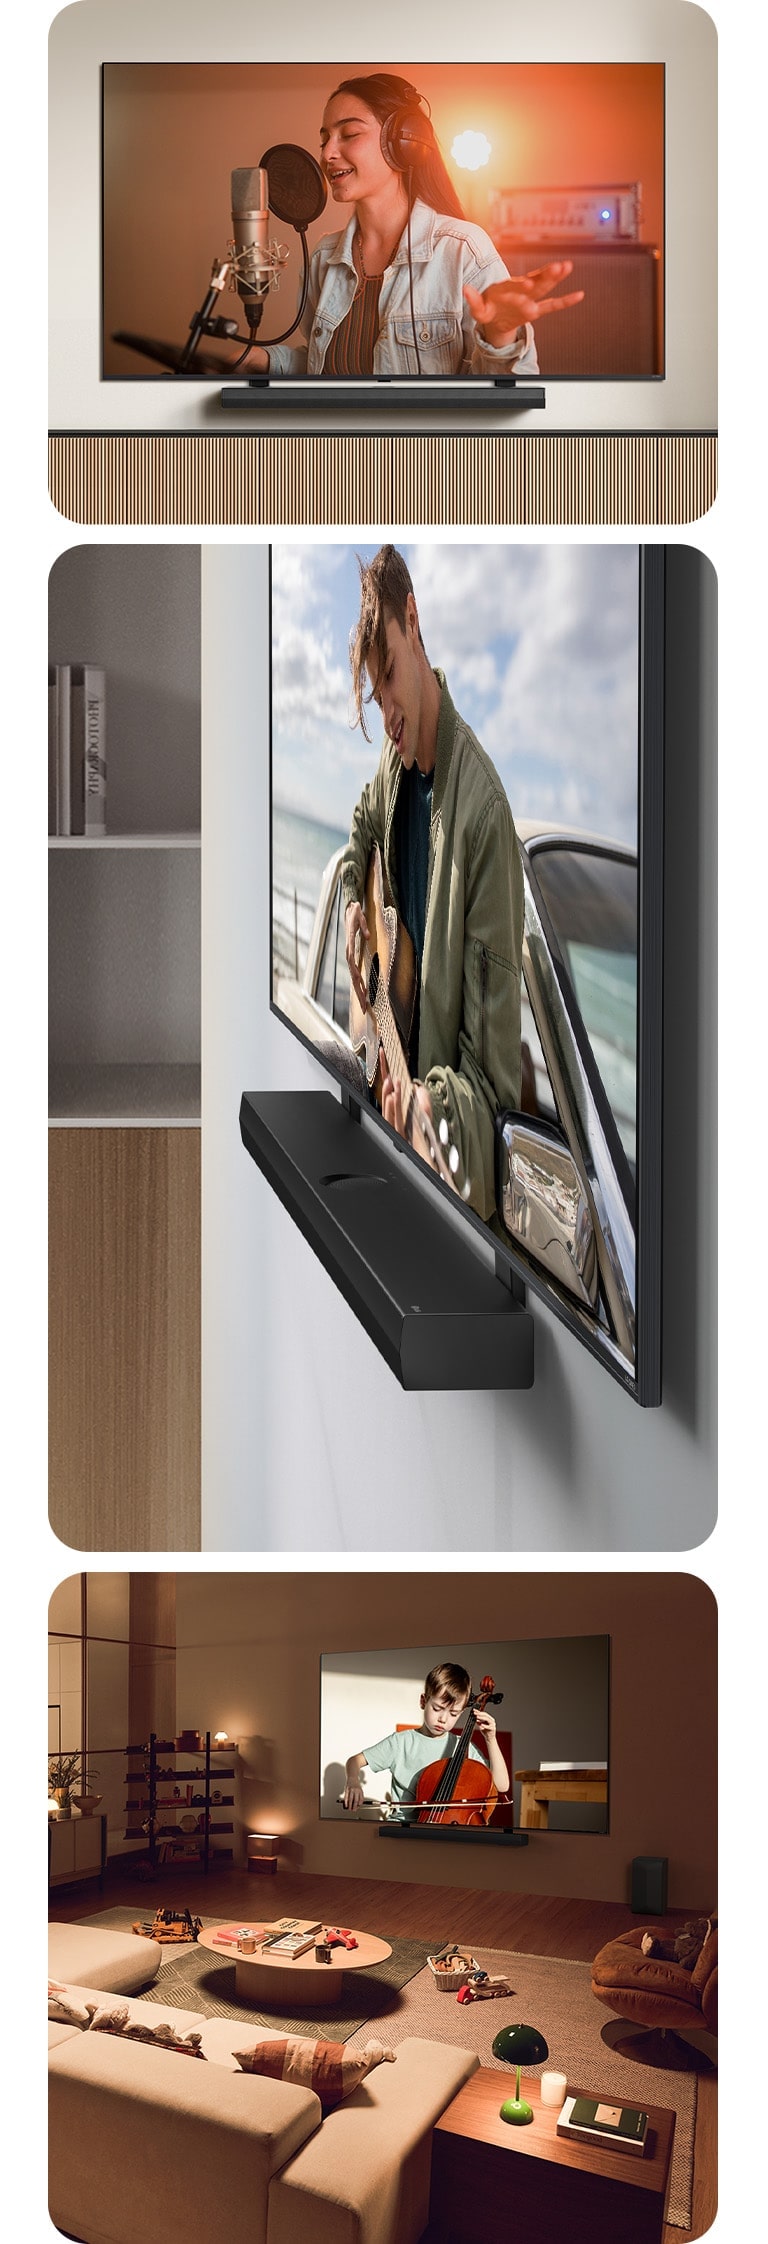 Die LG Soundbar und der LG QNED Fernseher an der Wand mit der passenden QNED-Halterung in einem grauen und hölzernen Wohnraum in schräger Perspektive, wobei auf dem LG QNED Fernseher ein Gitarre spielender Mann zu sehen ist.  LG Soundbar und LG QNED Fernseher vor einer cremefarbenen Wand mit der passenden QNED-Fernsehhalterung. Der Fernseher zeigt ein Video, in dem eine Frau in einem Aufnahmestudio singt. Unter dem Fernseher befindet sich ein moderner geometrischer Holzständer.   LG Soundbar und LG QNED Fernseher an einer Wand mit der passenden QNED-Fernsehhalterung in einem gemütlichen und schwach beleuchteten Wohnraum mit Kinderspielzeug. Auf dem Fernseher läuft ein Video, in dem ein kleiner Junge Cello spielt. 